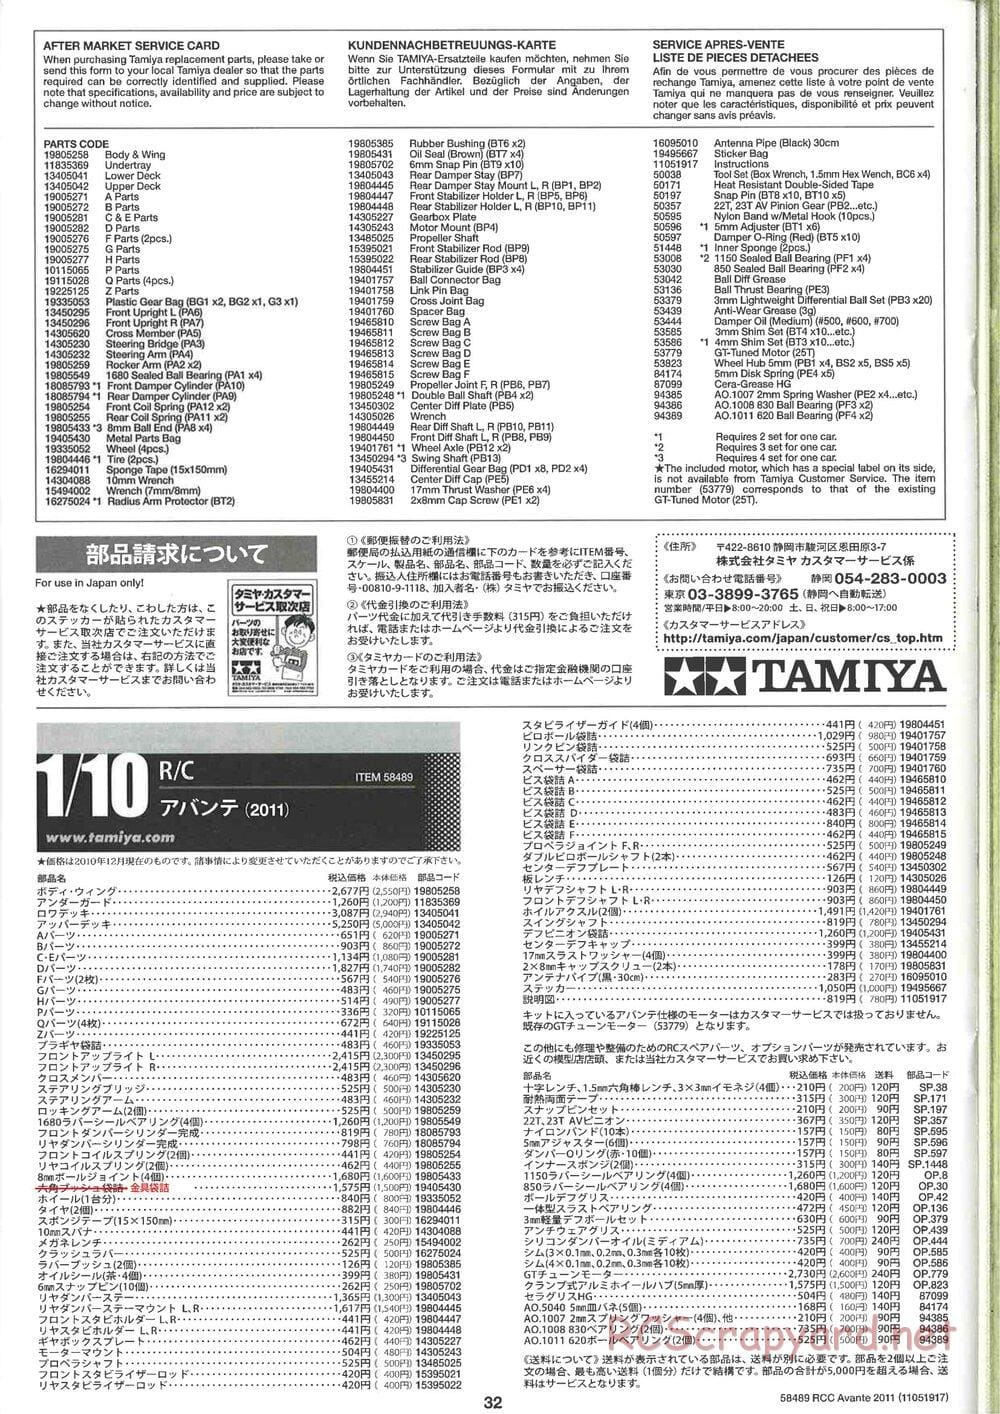 Tamiya - Avante 2011 - AV Chassis - Manual - Page 32